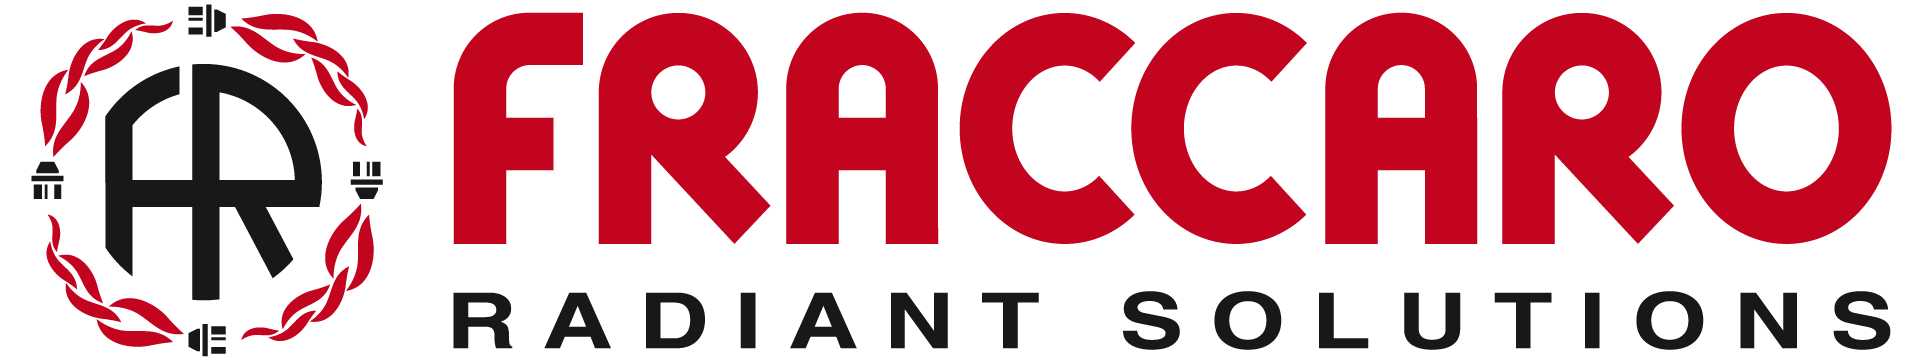 Logo-Fraccaro-orizzontale_hires